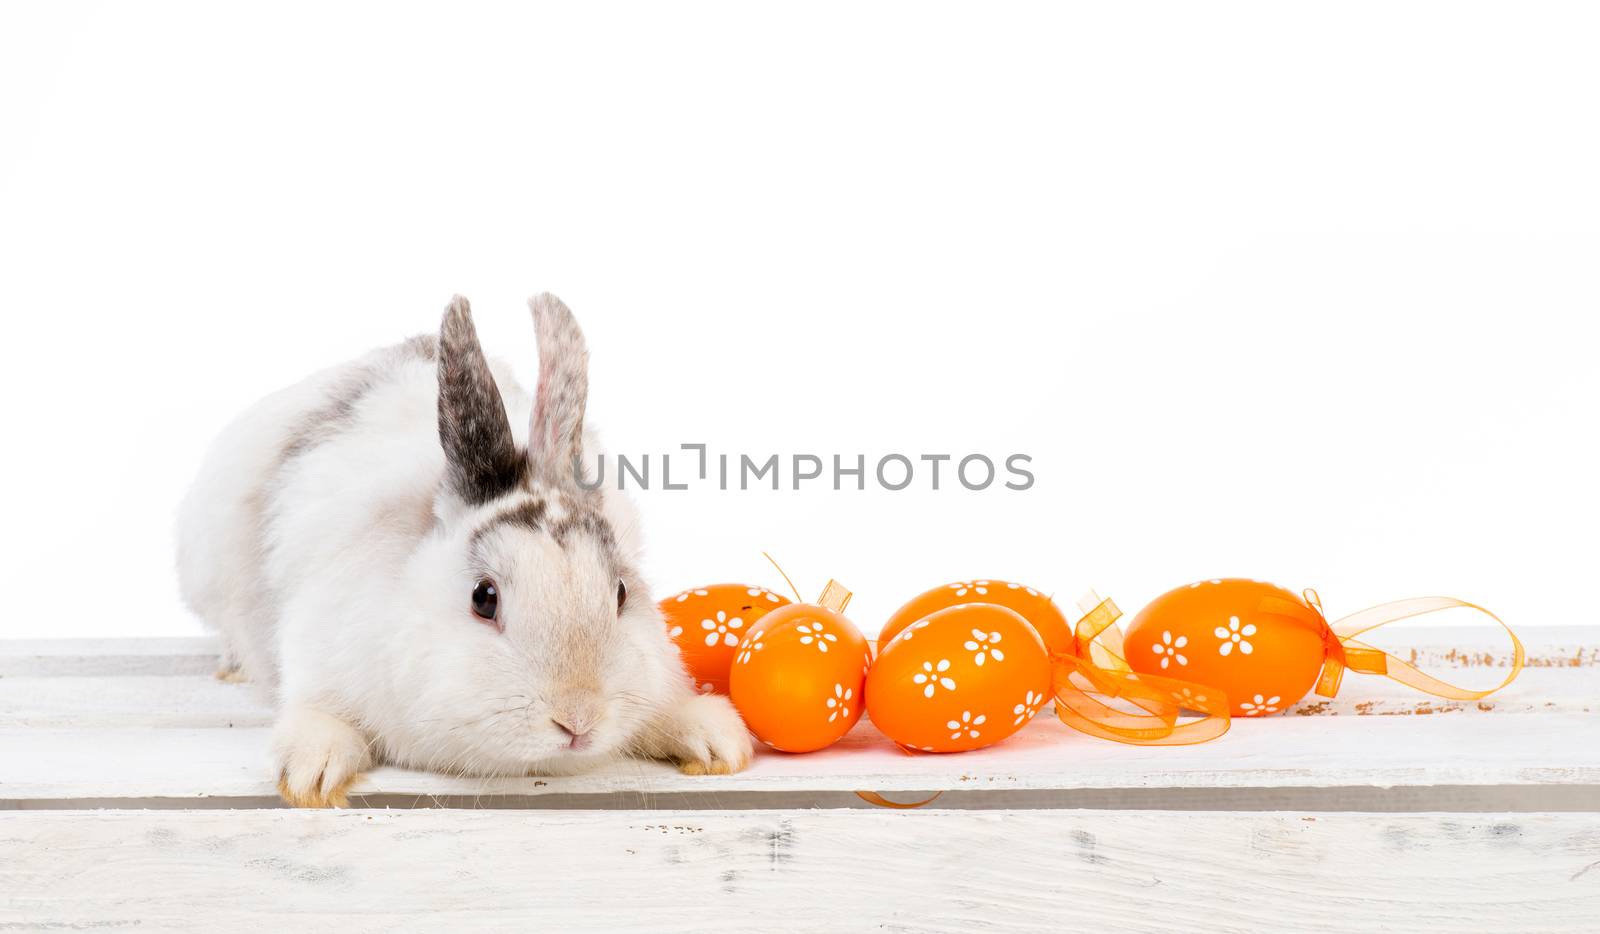 rabbit with Easter eggs by GekaSkr